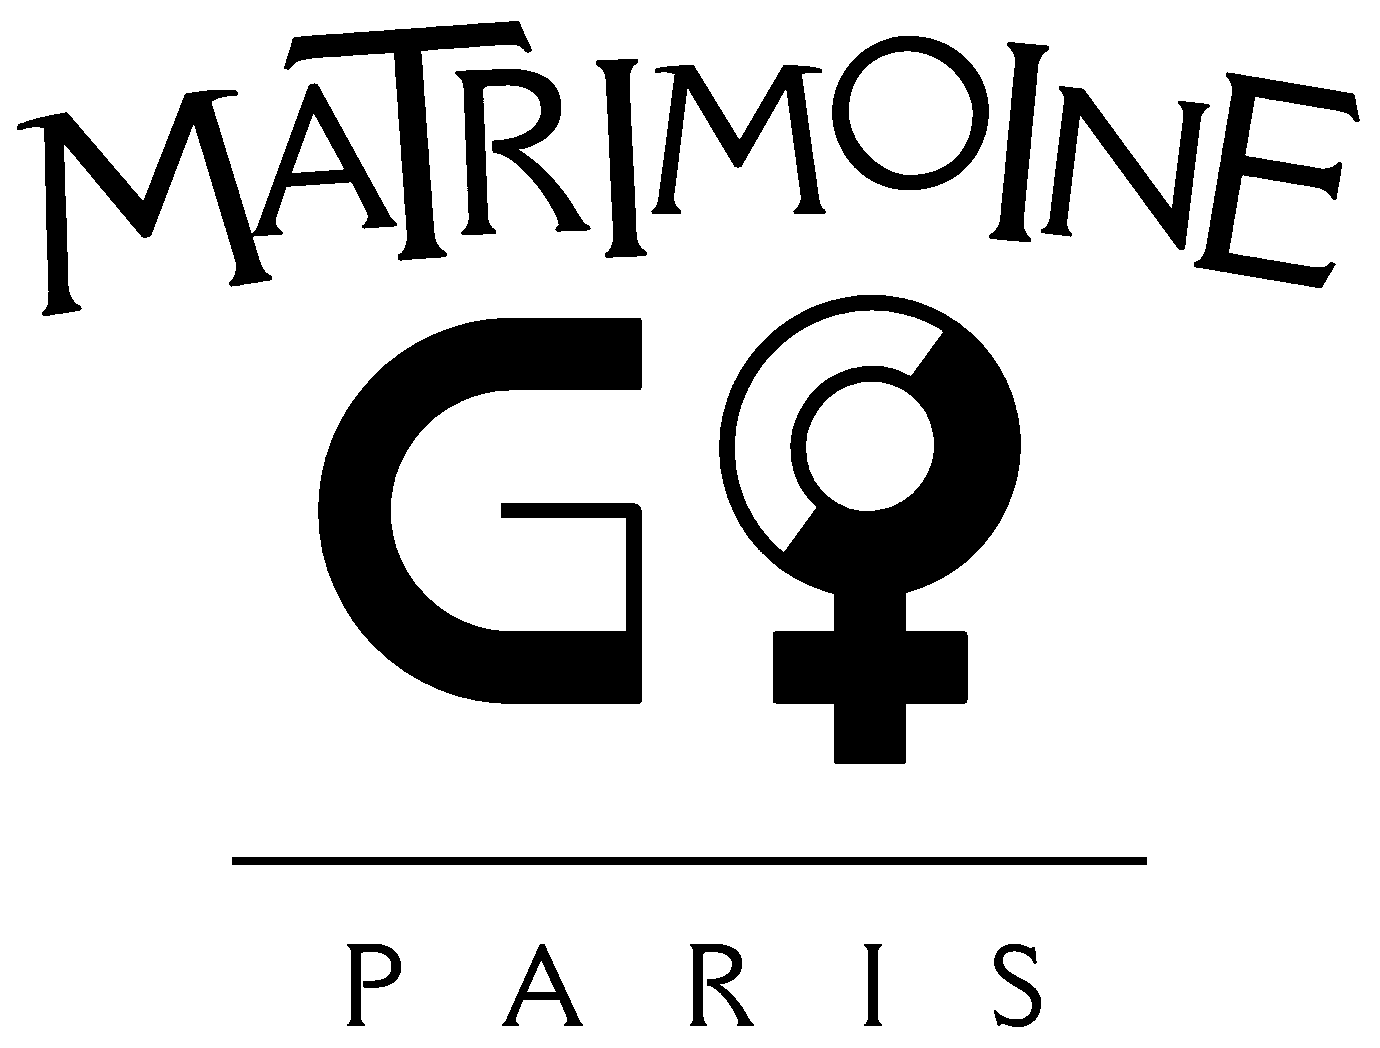 Logo MatrimoineGo